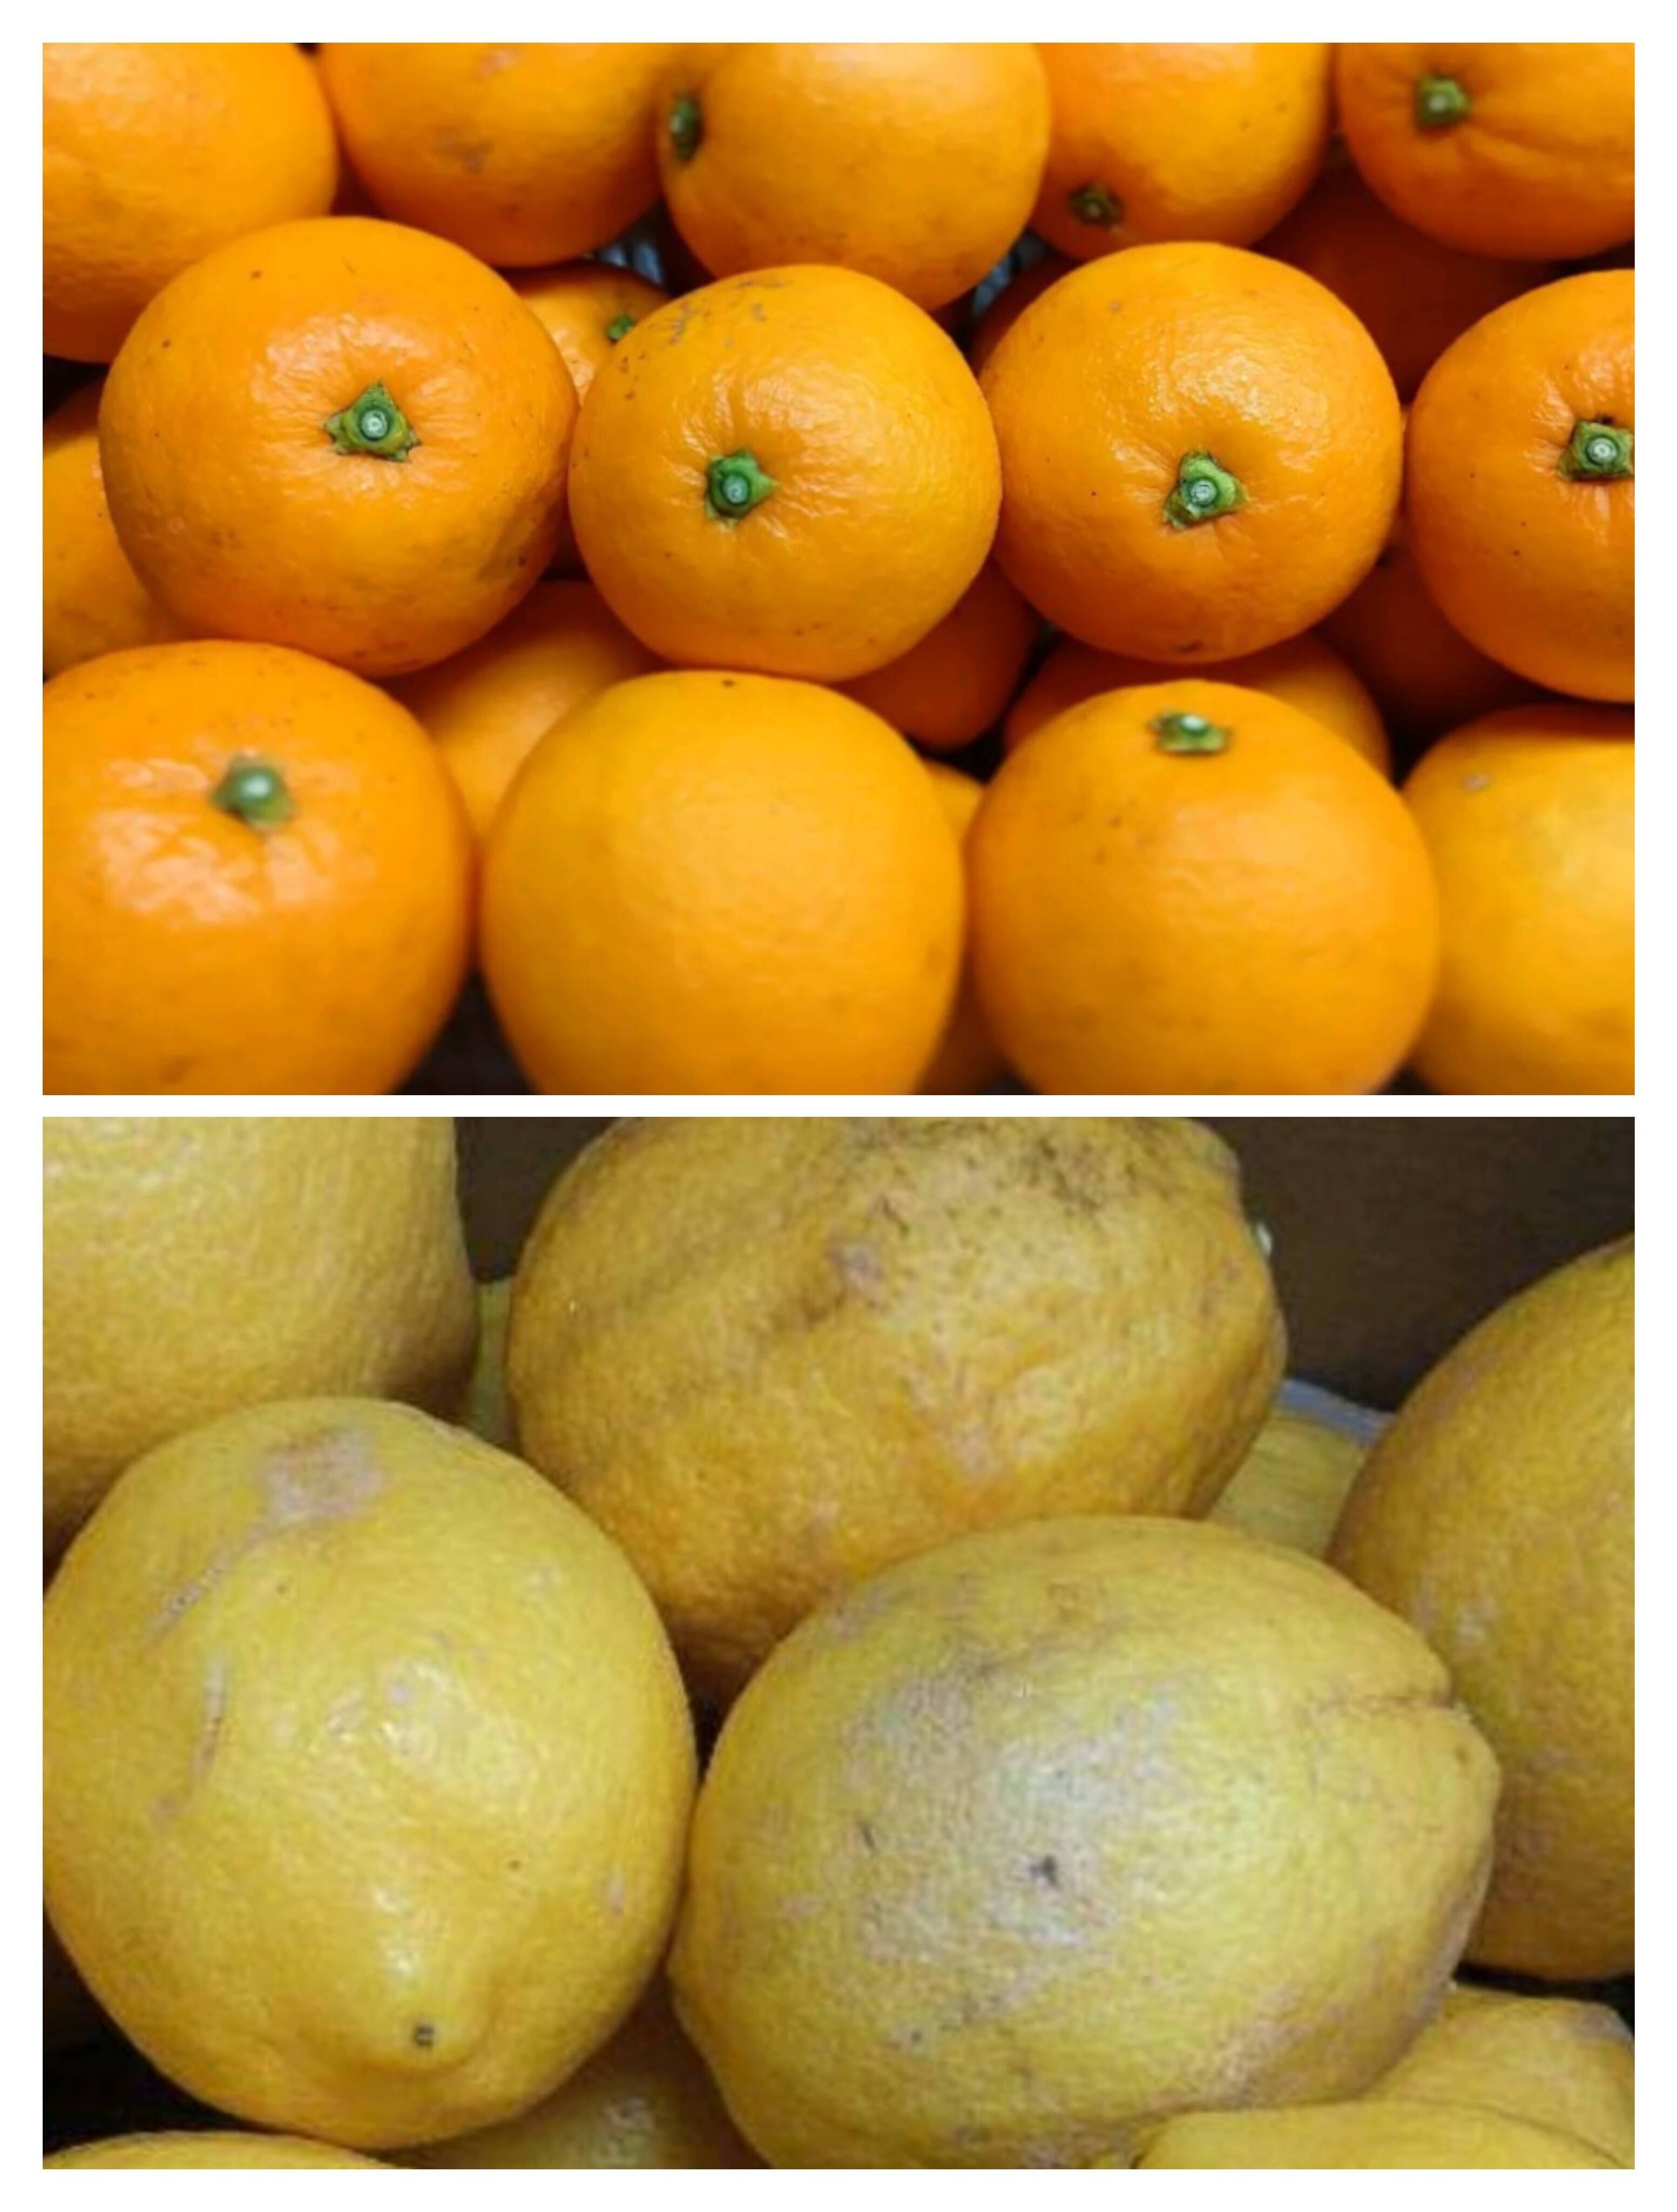 【セット商品】ミニネーブルオレンジ5kg+レモンC品1kg【ご家庭用】